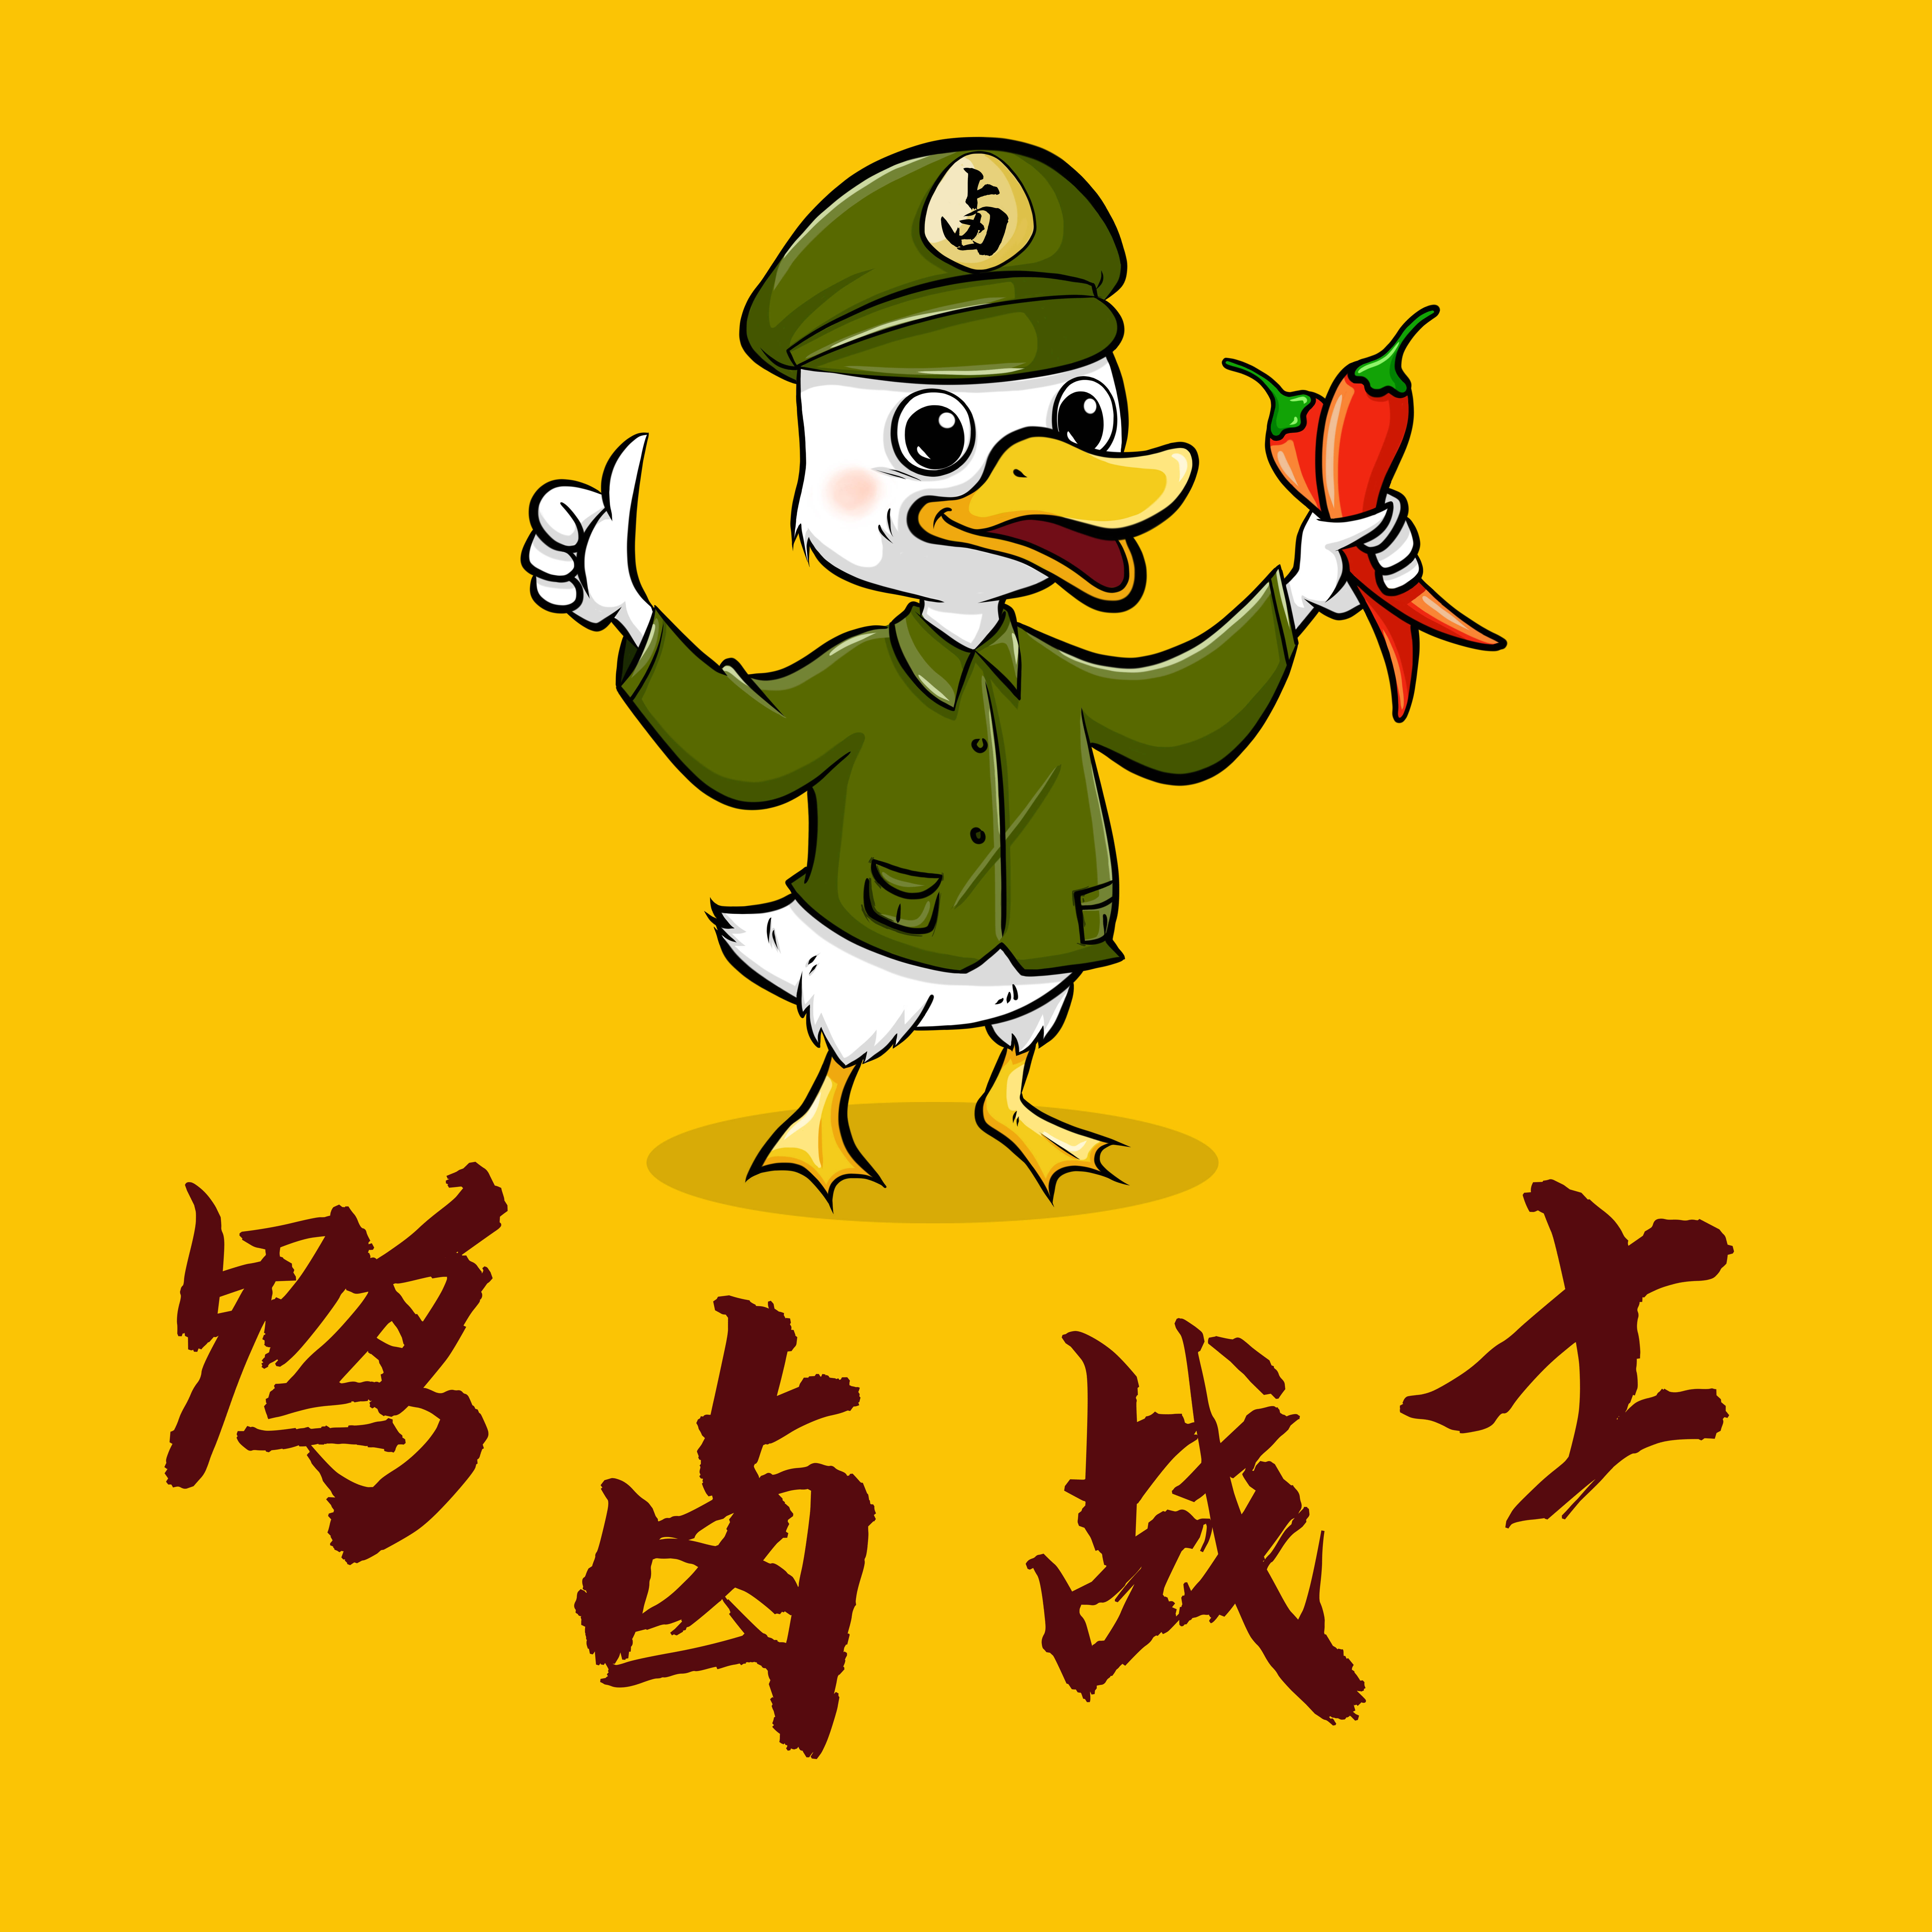 鸭卤战士 俺们河南人自己的鸭货品牌!